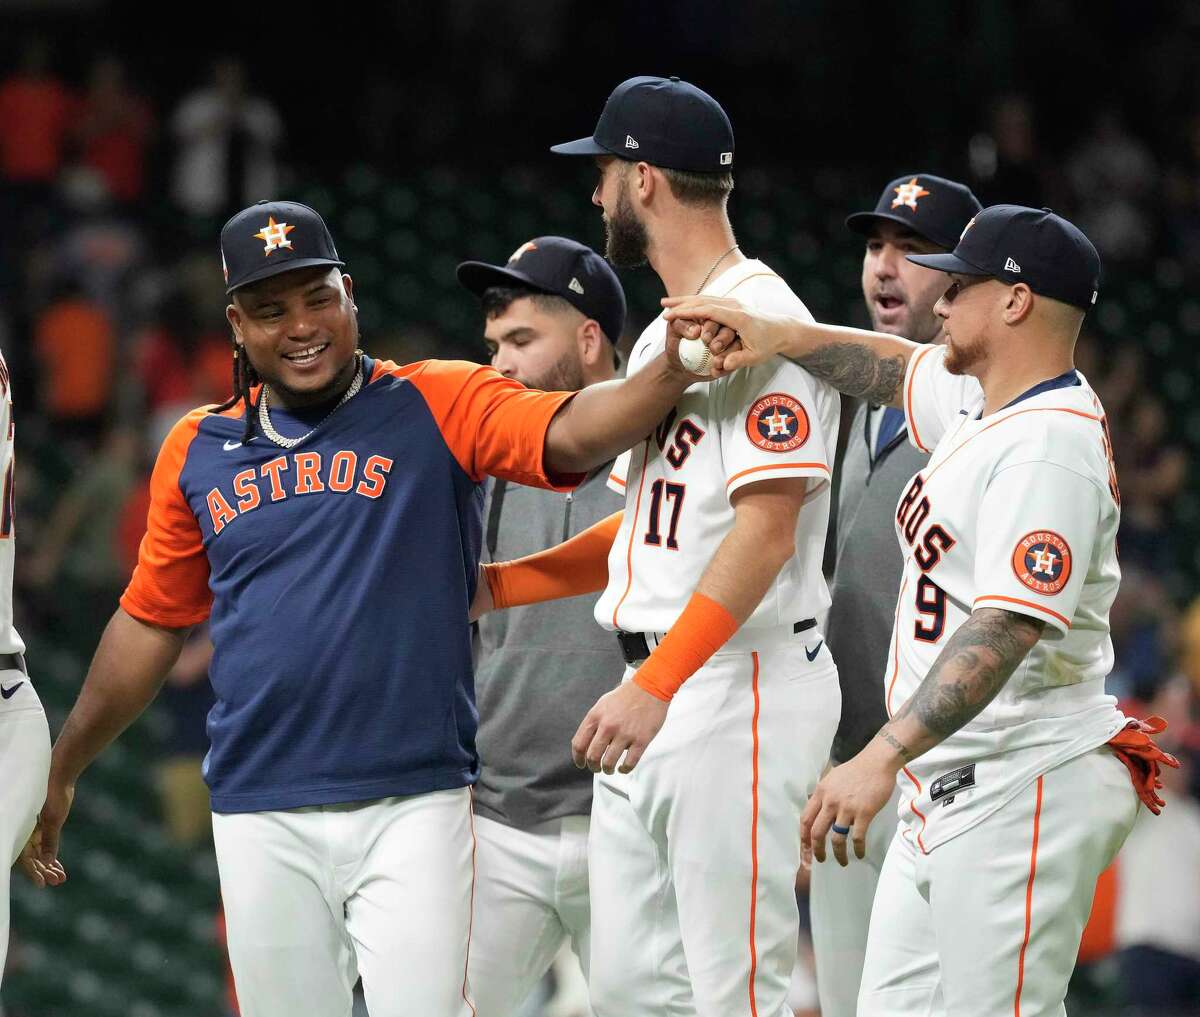 Framber Valdez Houston Astros Game Used Worn Jersey 2019